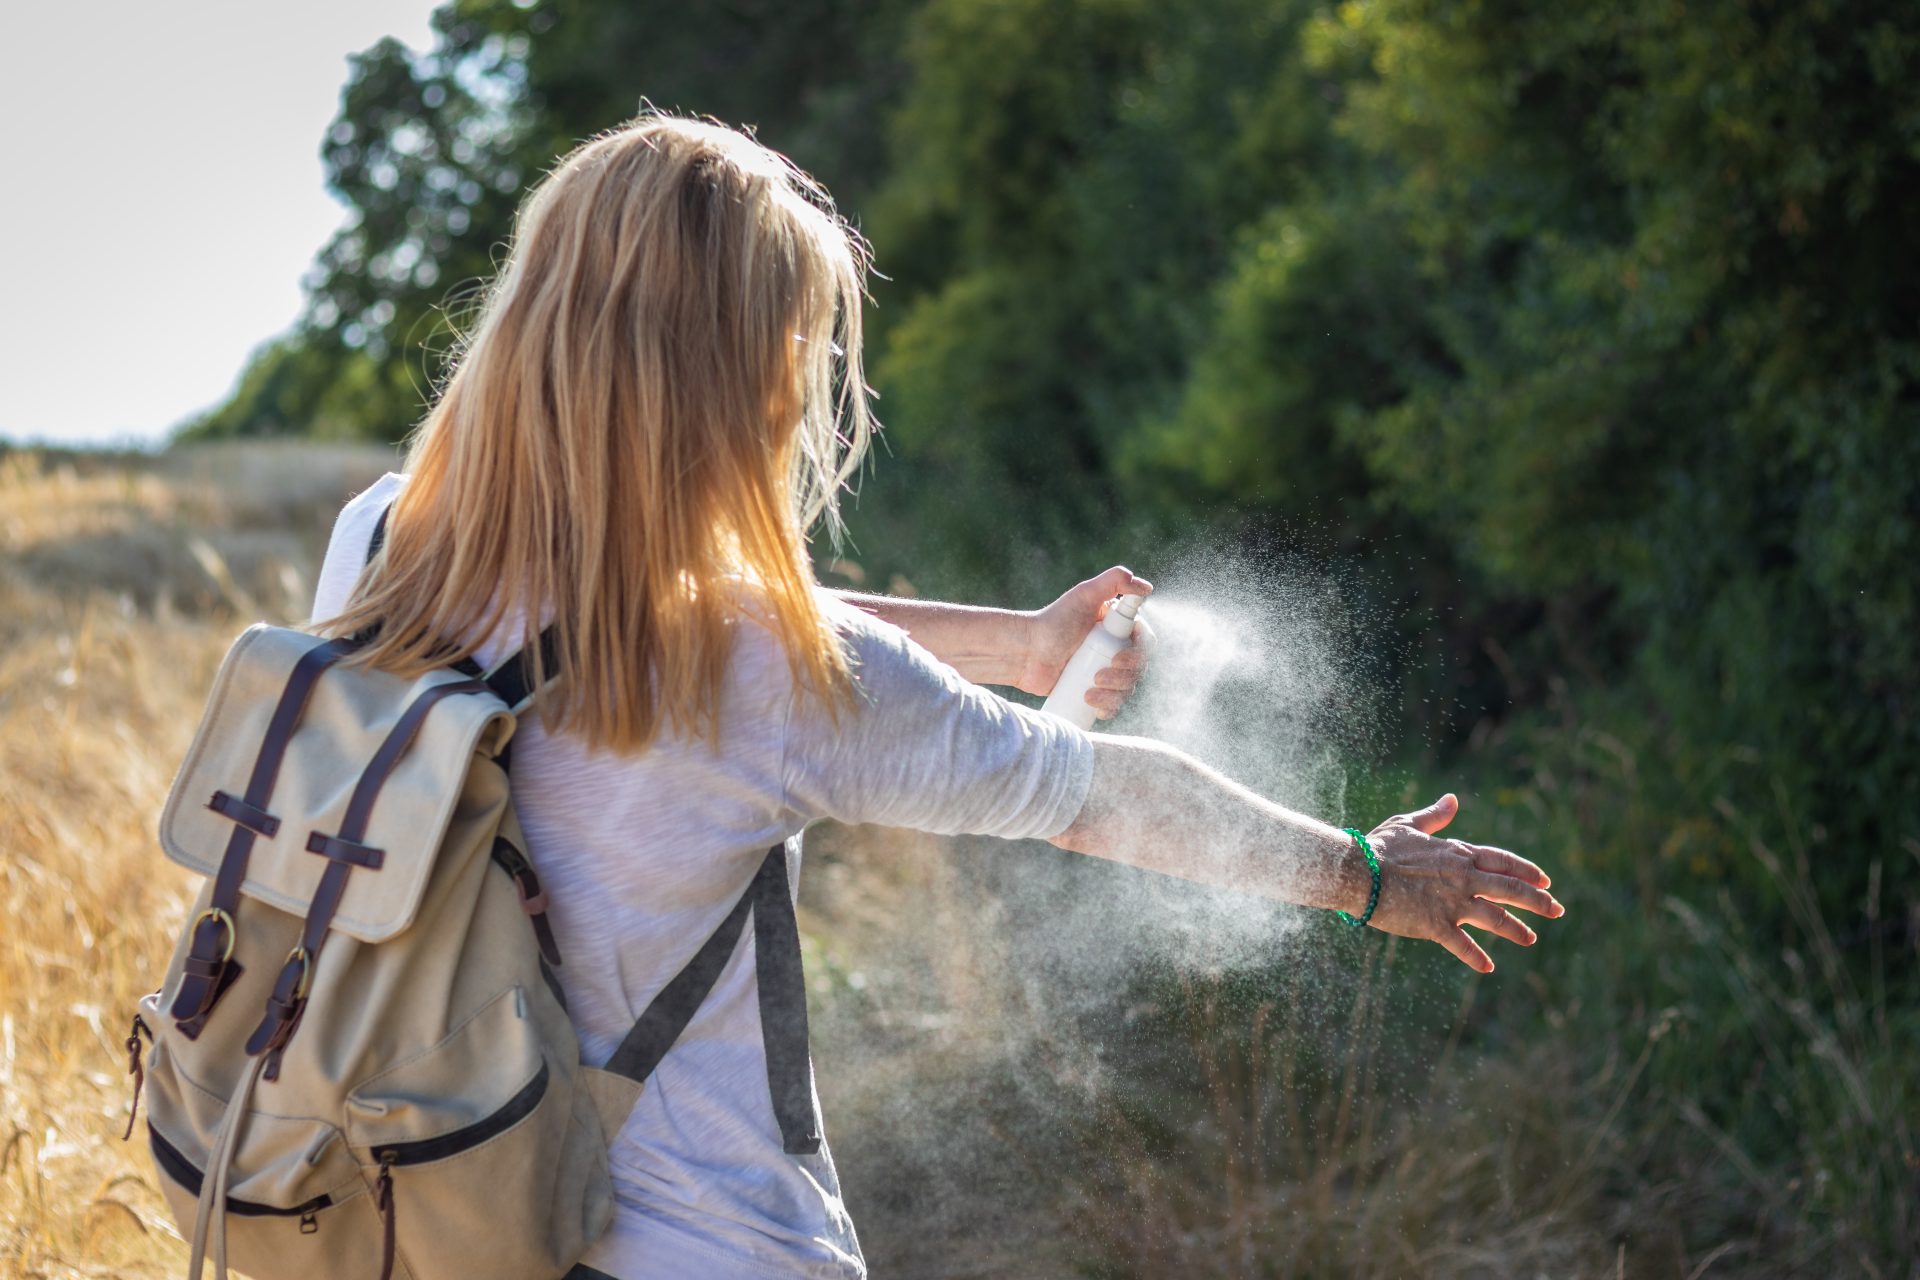 muggen tijdens wandelen en fietsen op afstand houden